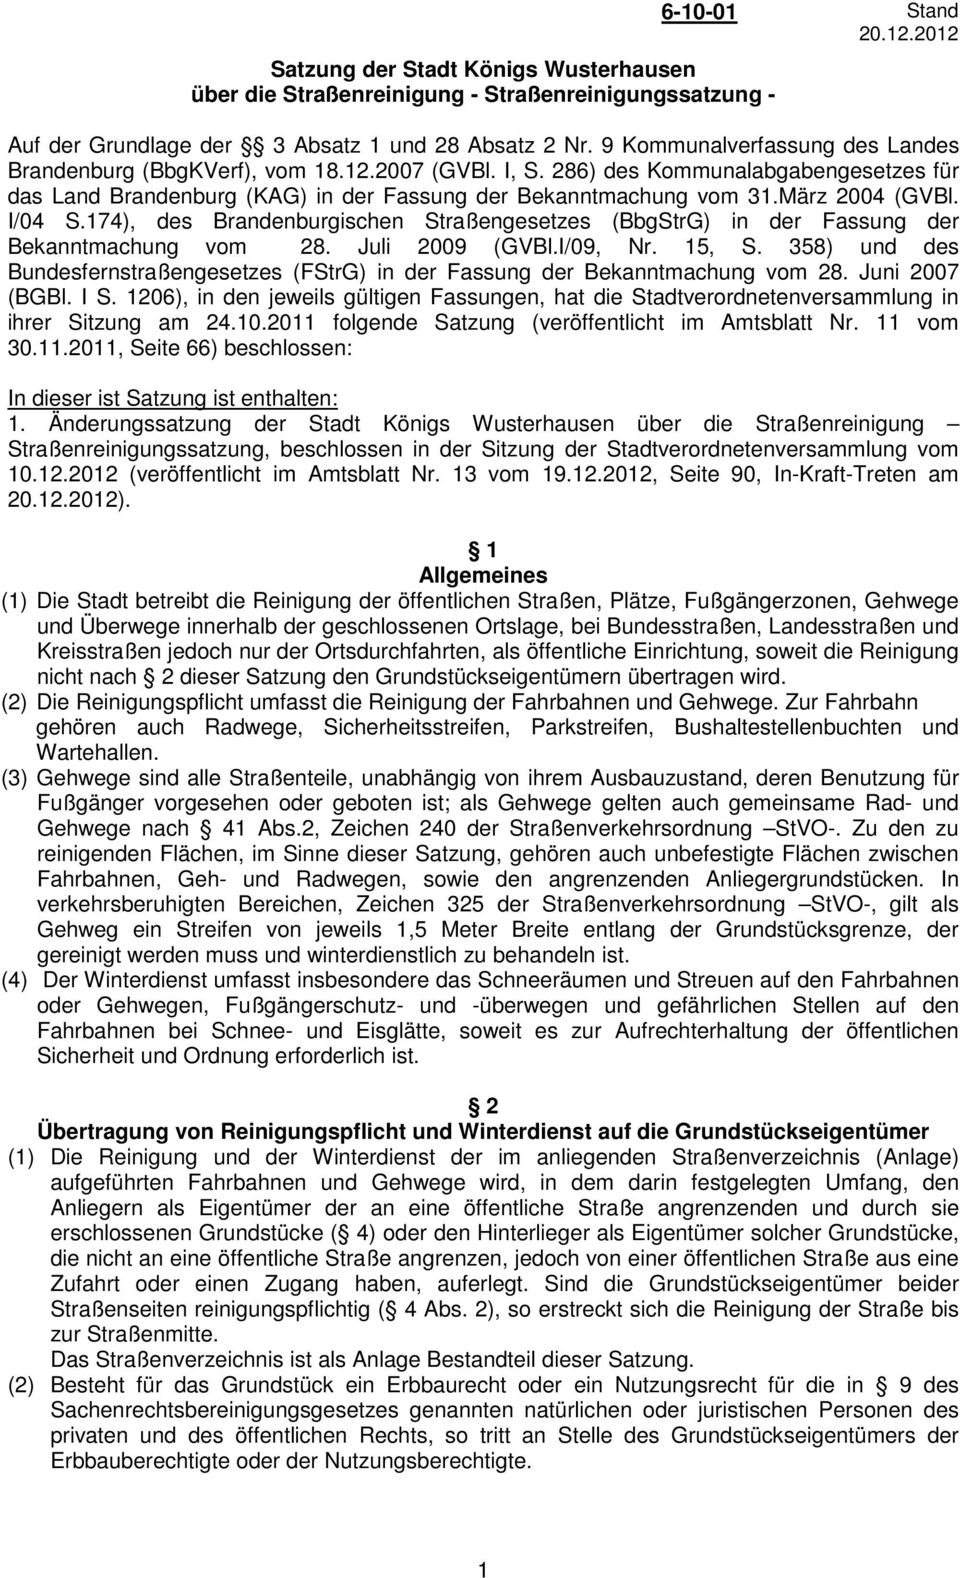 März 2004 (GVBl. I/04 S.174), des Brandenburgischen Straßengesetzes (BbgStrG) in der Fassung der Bekanntmachung vom 28. Juli 2009 (GVBl.I/09, Nr. 15, S.